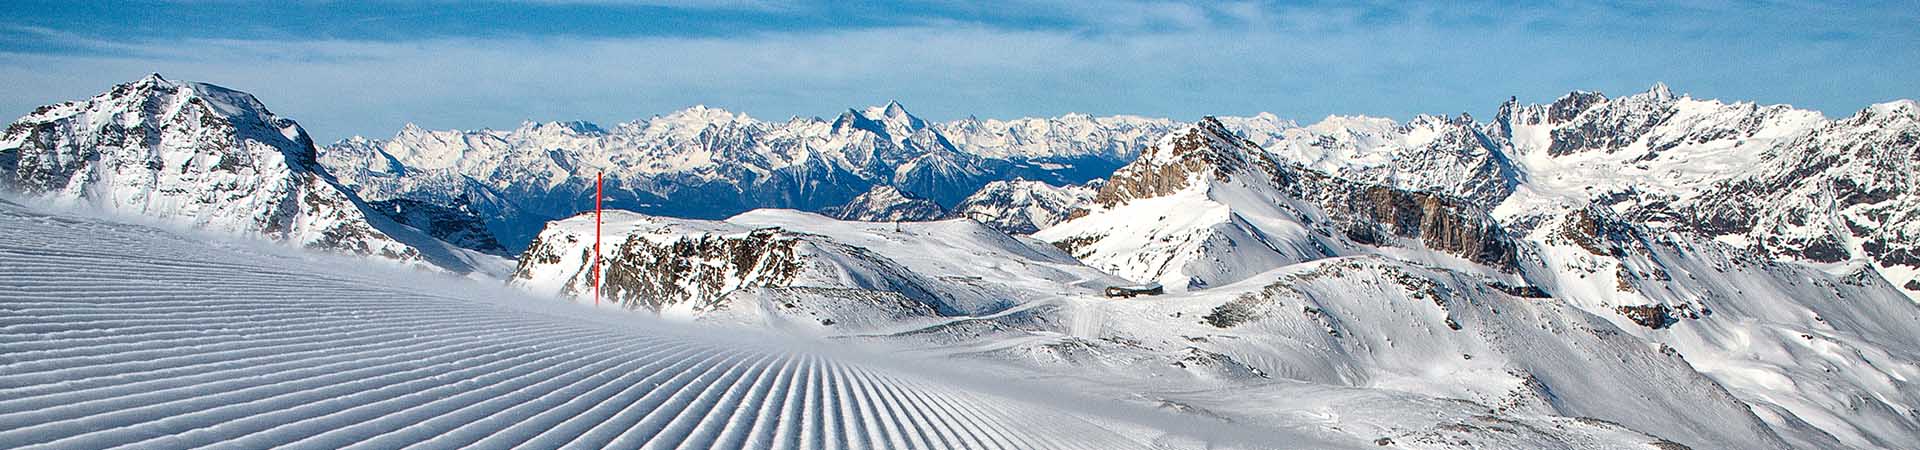 Vacanze sulla neve in Italia: panorama di una località sciistica.